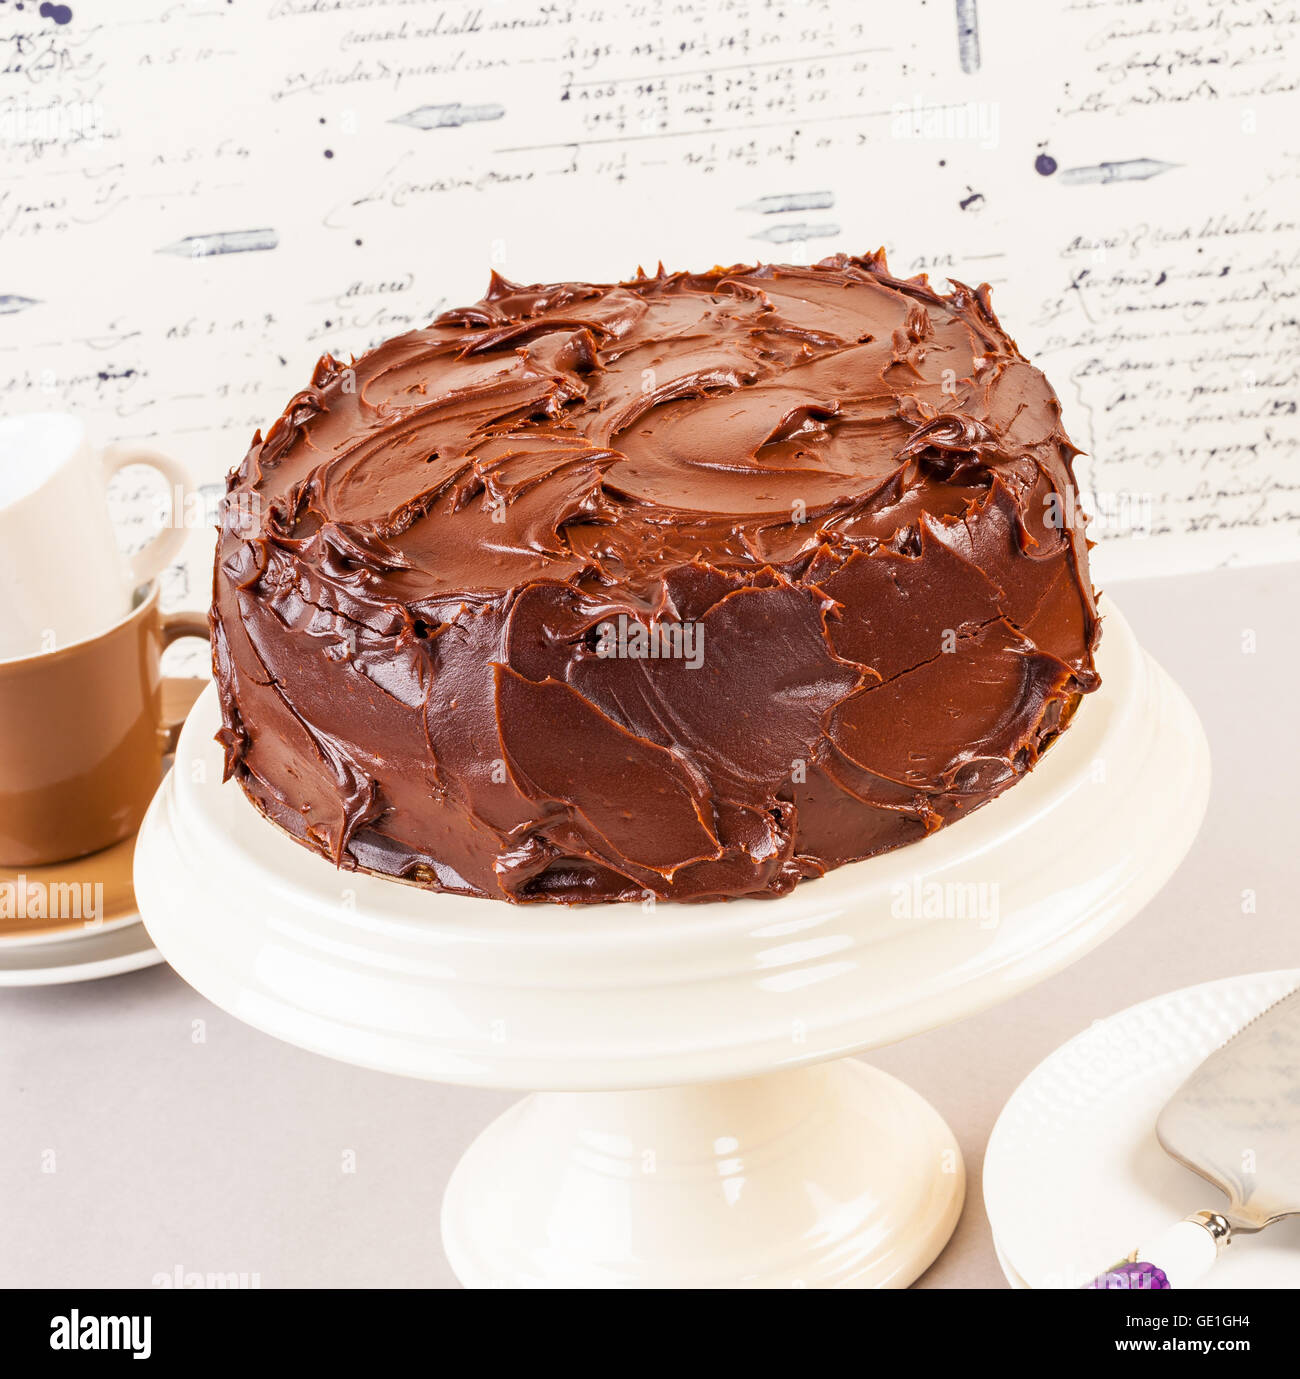 Devil's food cake est un gâteau au chocolat riche, dense, très populaires partout aux États-Unis Banque D'Images